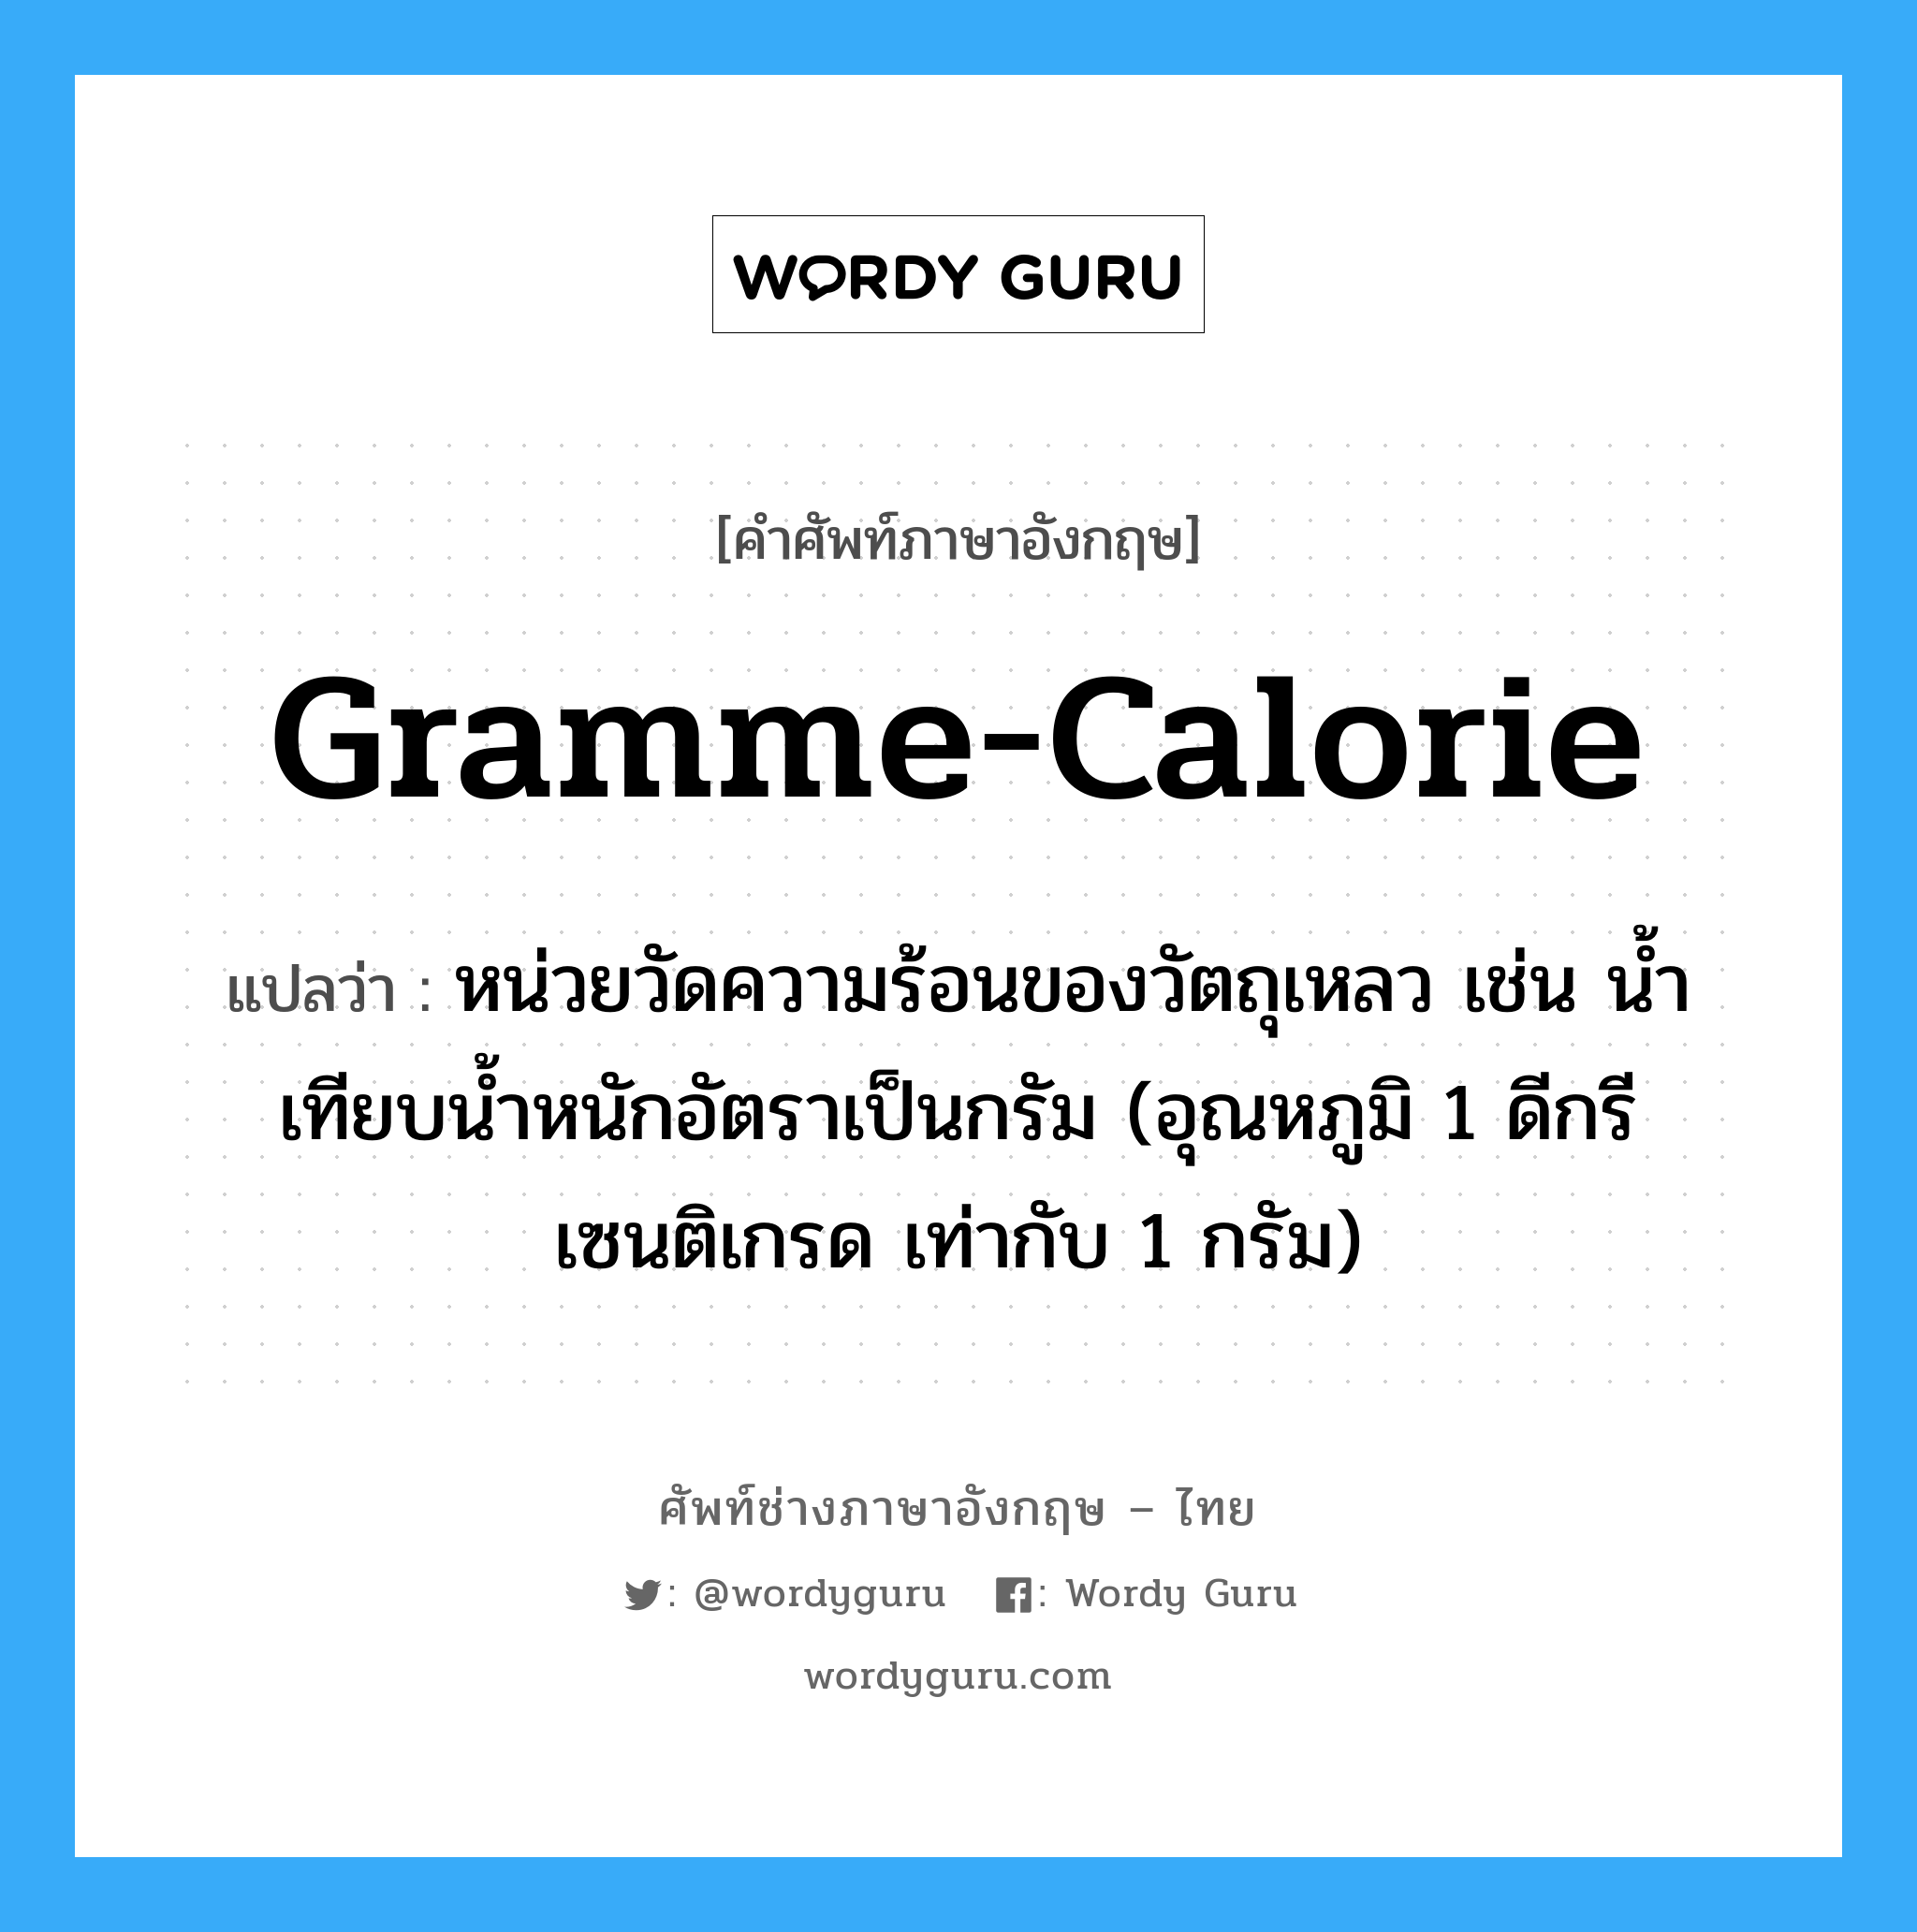 gramme-calorie แปลว่า?, คำศัพท์ช่างภาษาอังกฤษ - ไทย gramme-calorie คำศัพท์ภาษาอังกฤษ gramme-calorie แปลว่า หน่วยวัดความร้อนของวัตถุเหลว เช่น น้ำ เทียบน้ำหนักอัตราเป็นกรัม (อุณหภูมิ 1 ดีกรีเซนติเกรด เท่ากับ 1 กรัม)